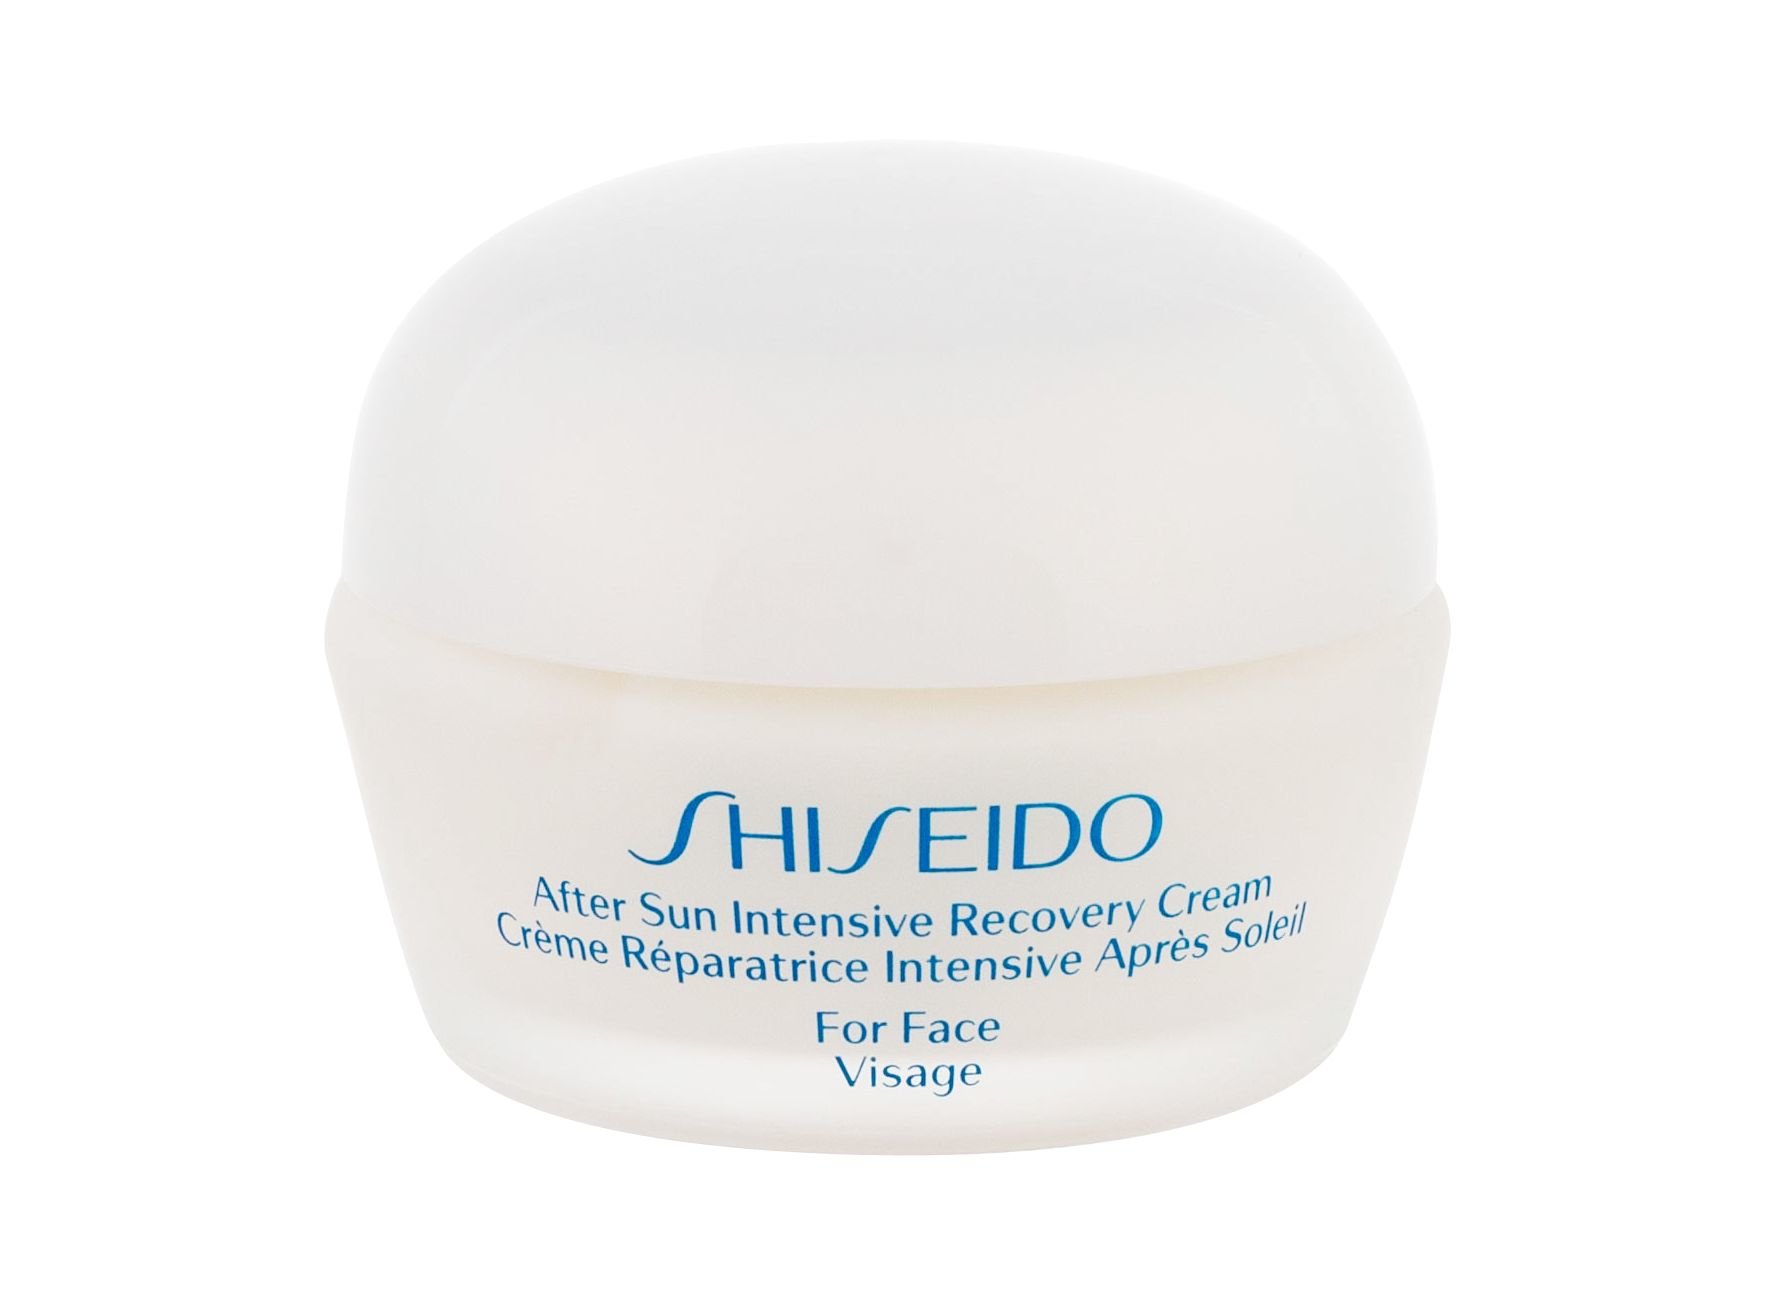 Shiseido After Sun Intensive Recovery Cream priemonė po deginimosi